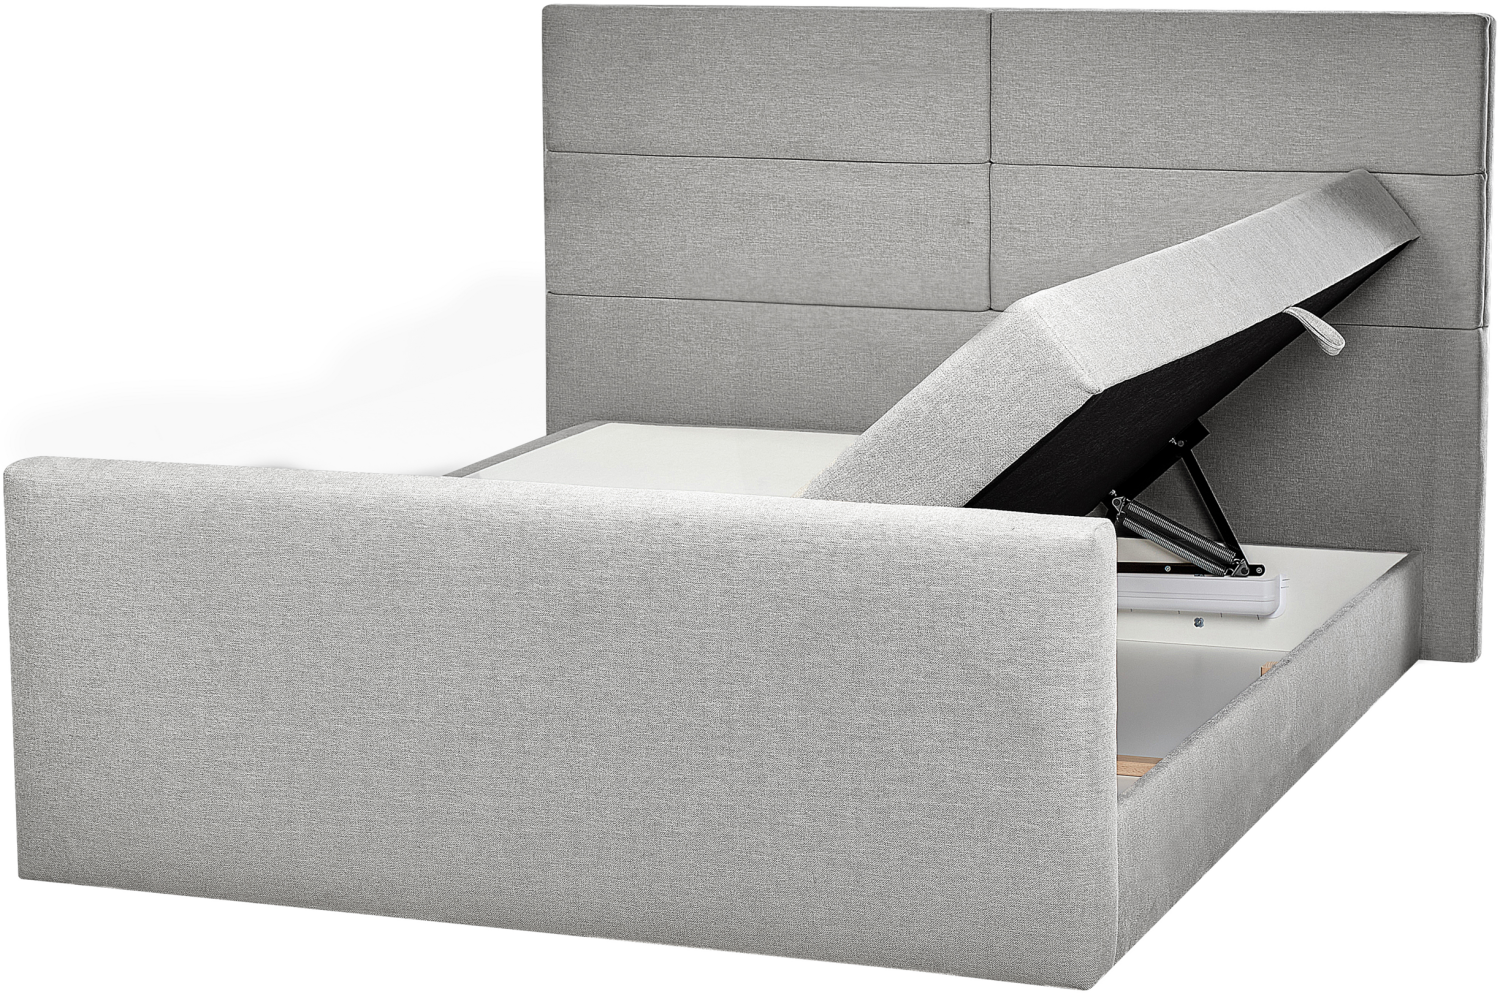 Boxspringbett Polsterbezug hellgrau mit Bettkasten hochklappbar 160 x 200 cm ARISTOCRAT Bild 1